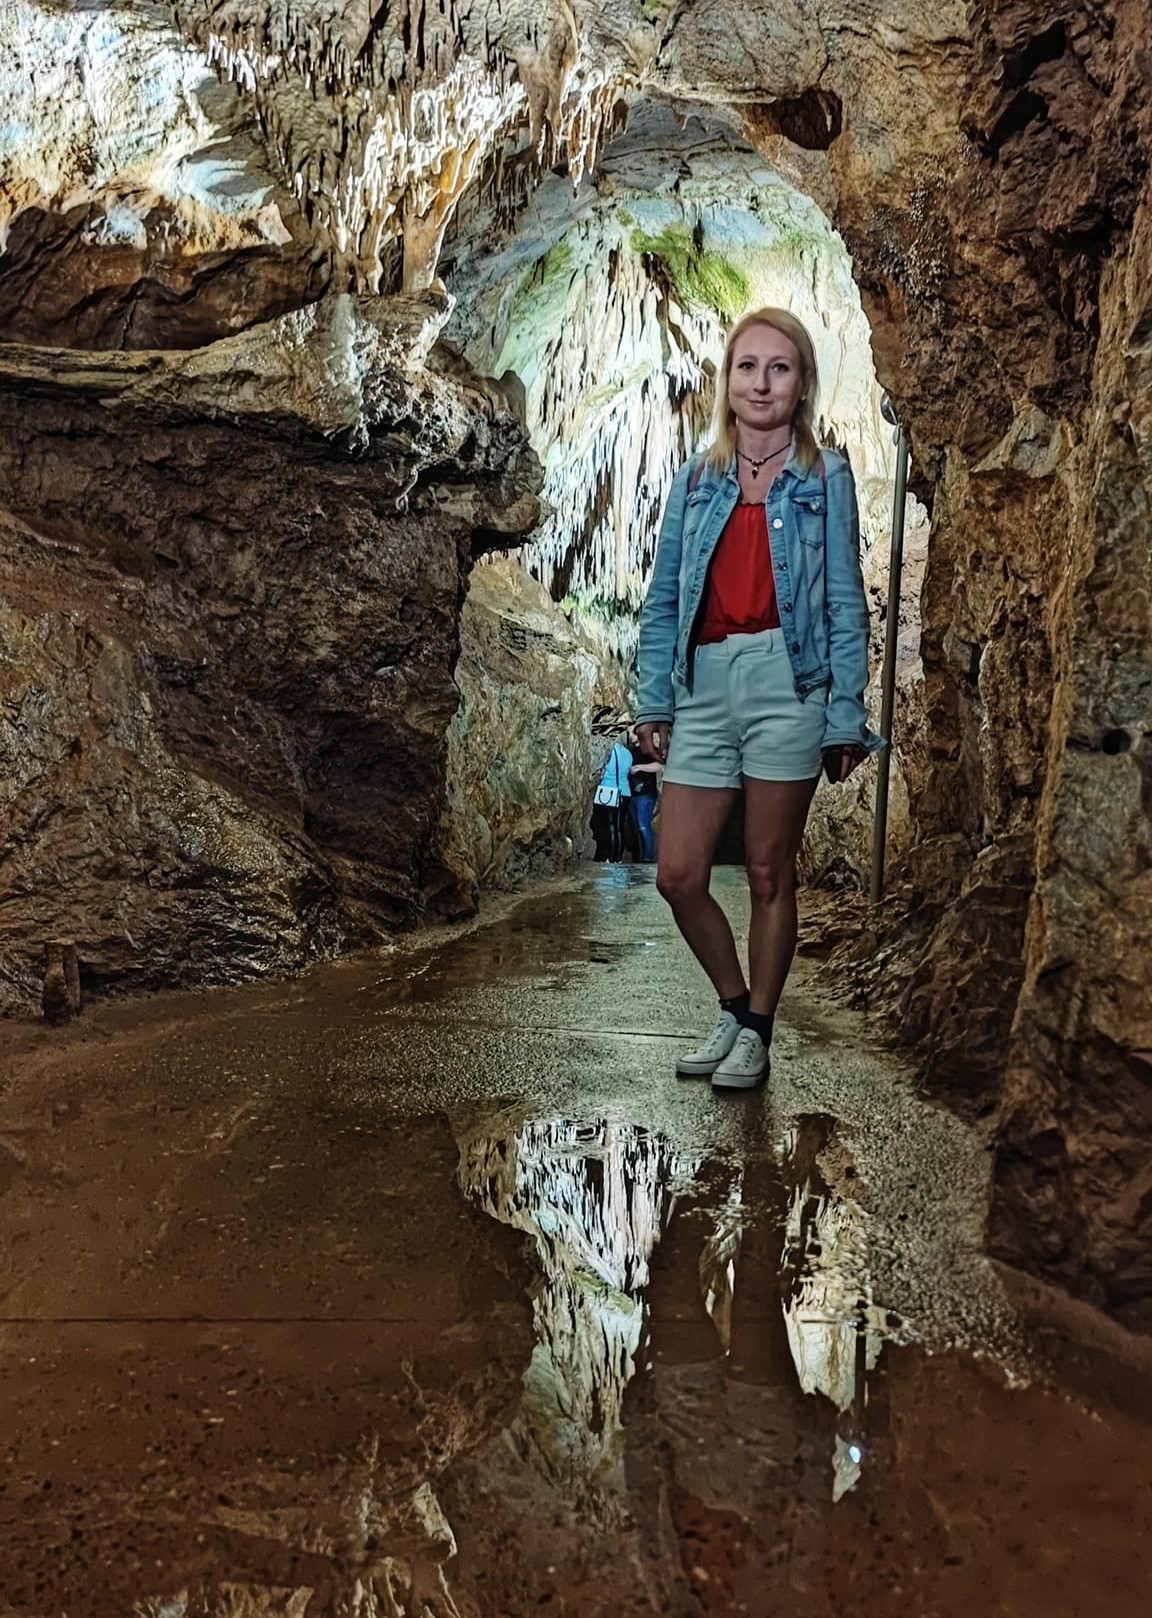 Gadima Cave